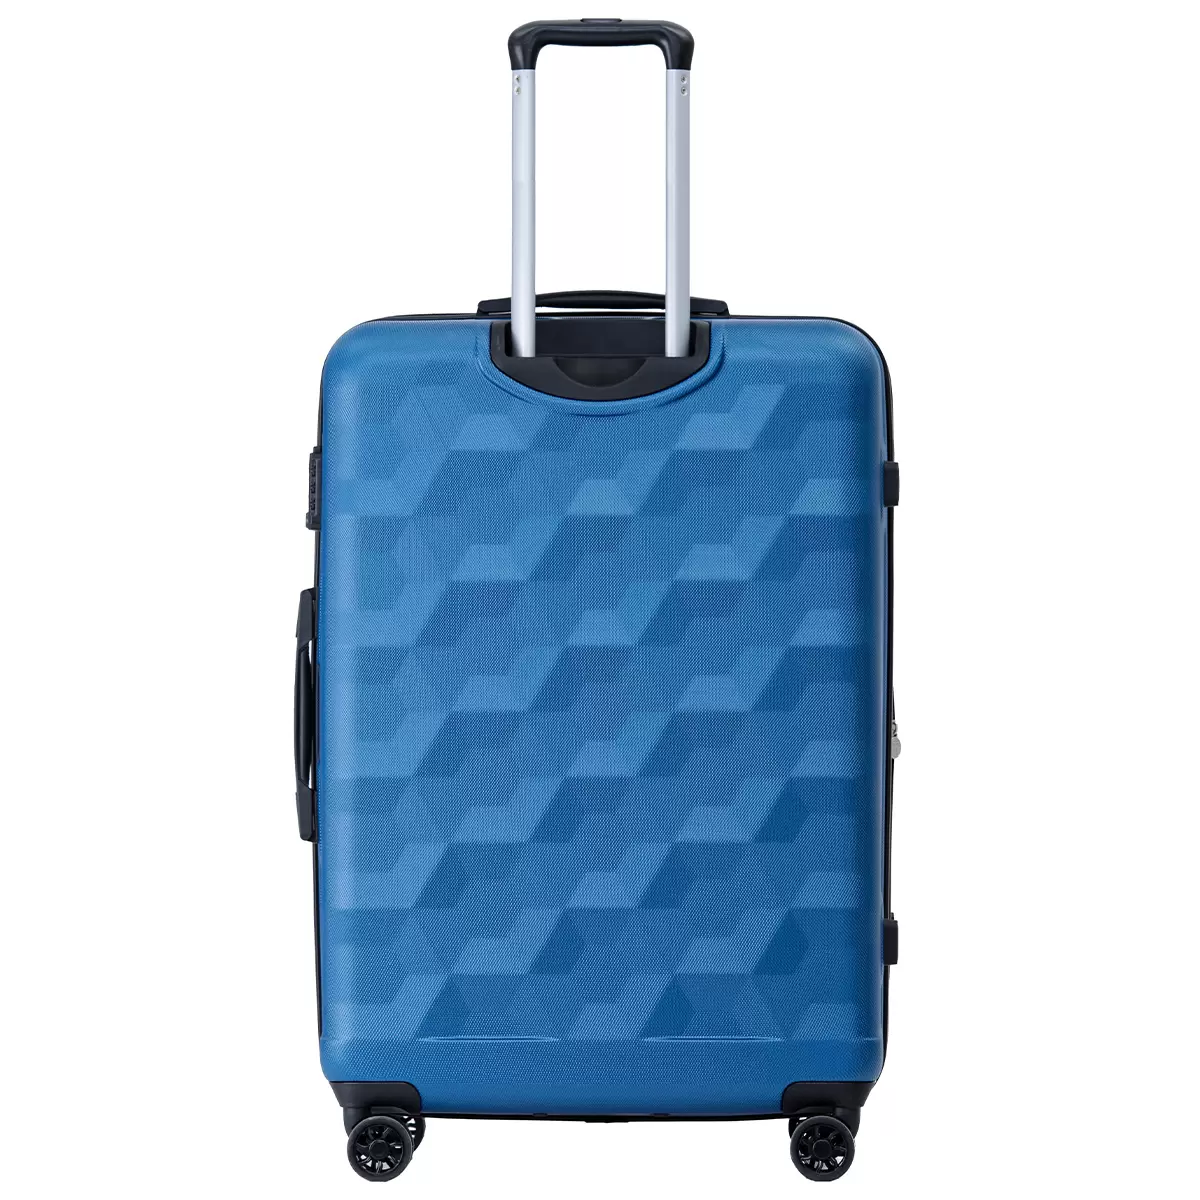 Tosca Bahamas Luggage 74cm Blue